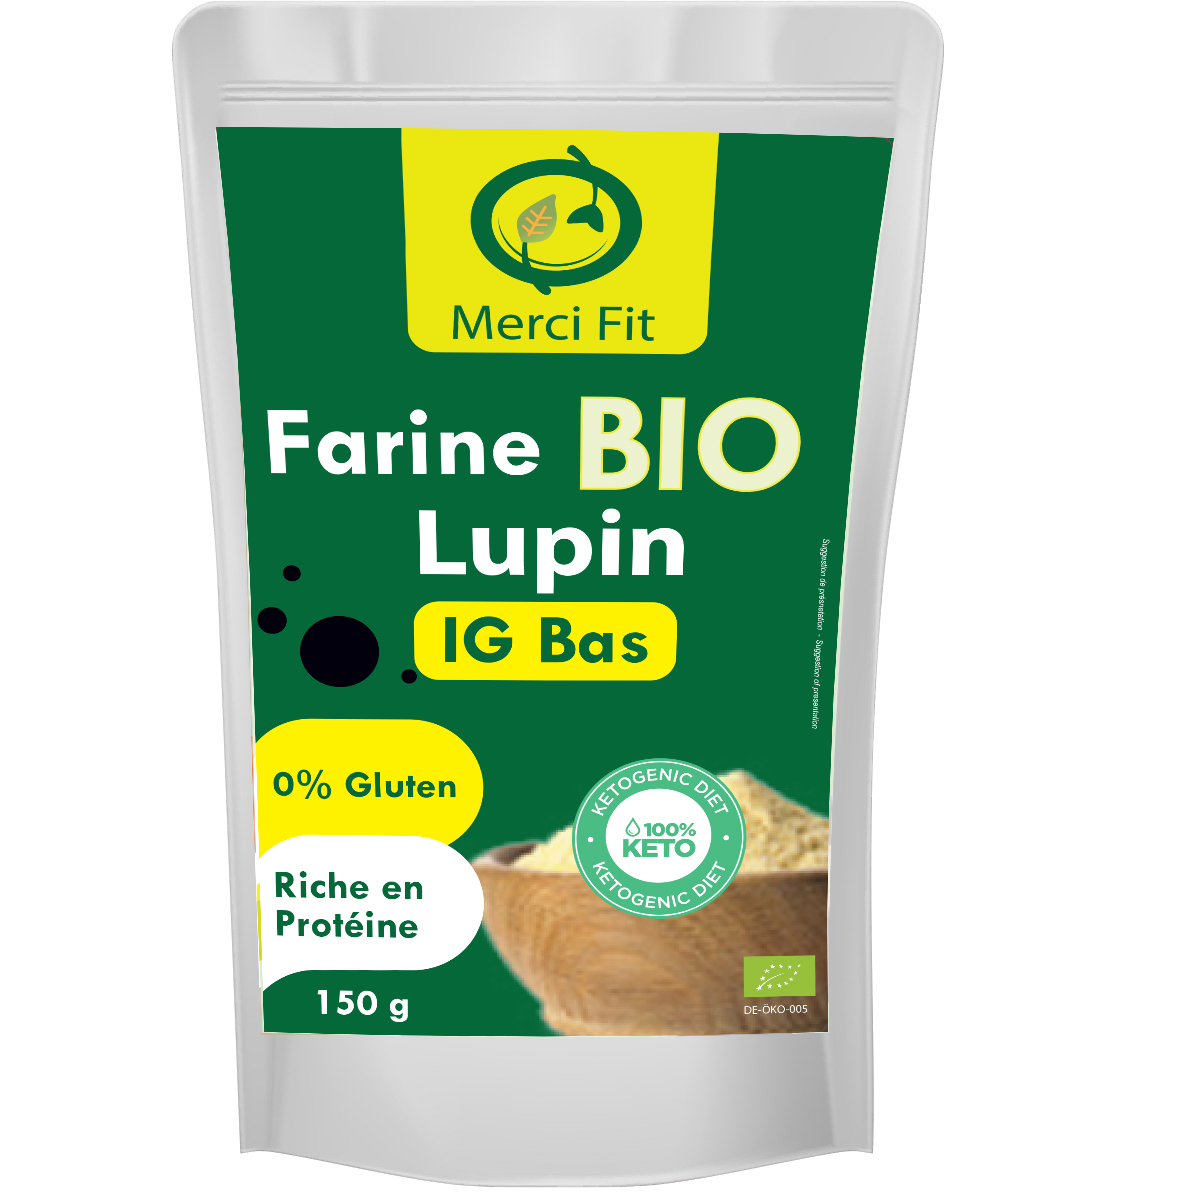 Farine de Lupin Biologique – La Moisson